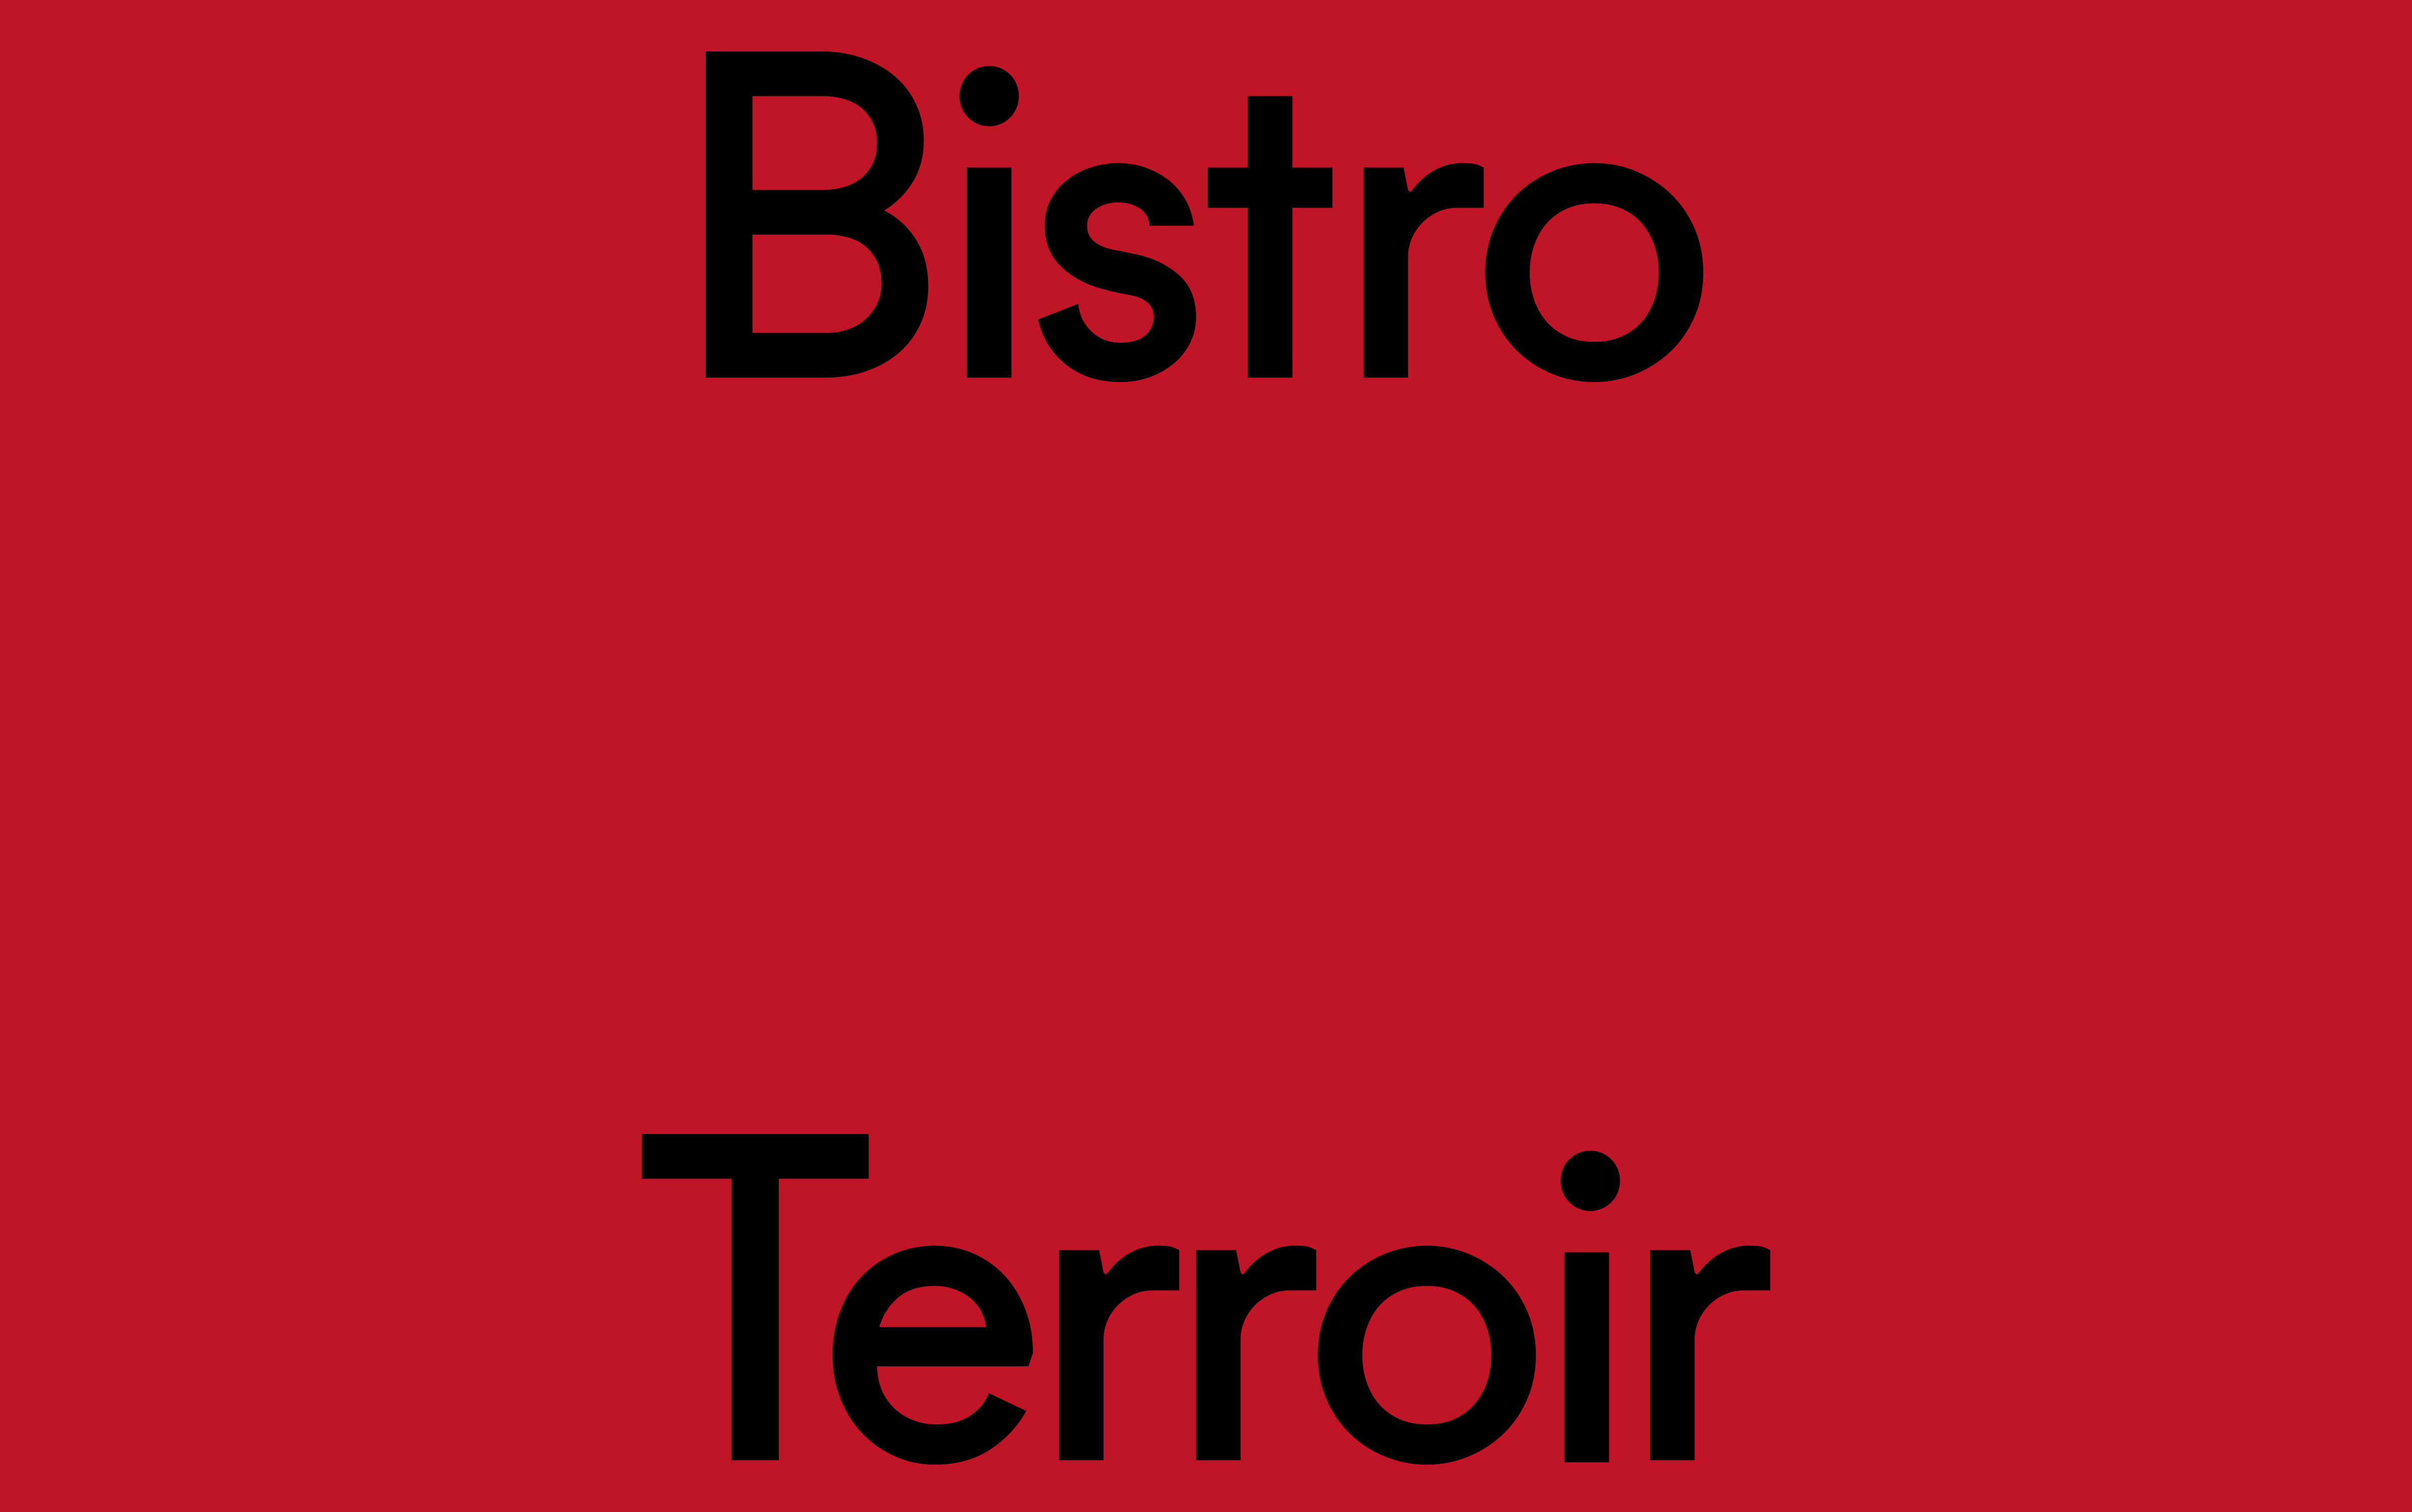 Bistro Terroir brand wordmark against red background